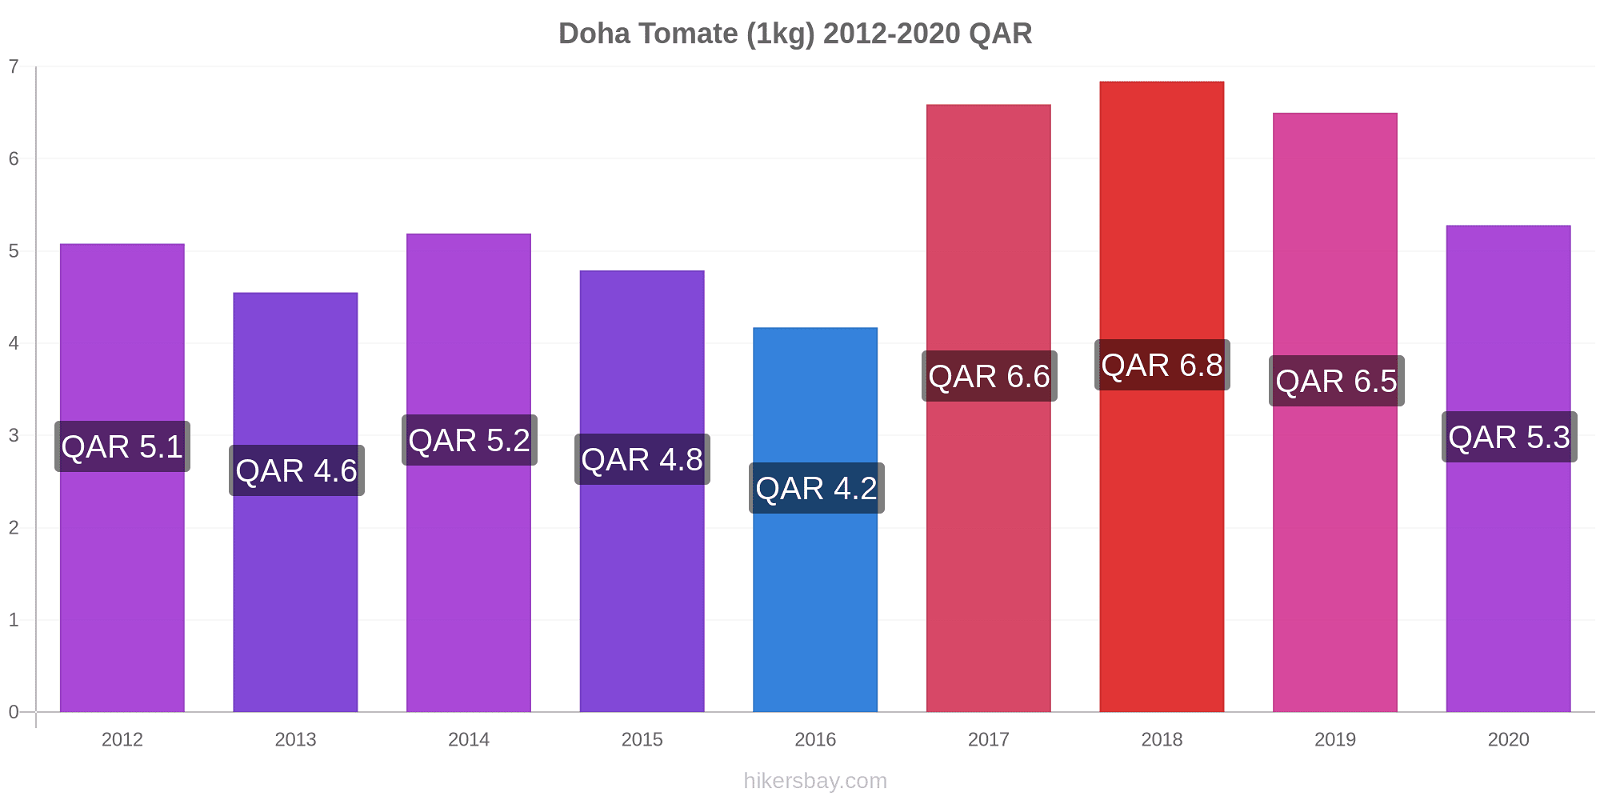 Doha cambios de precios Tomate (1kg) hikersbay.com